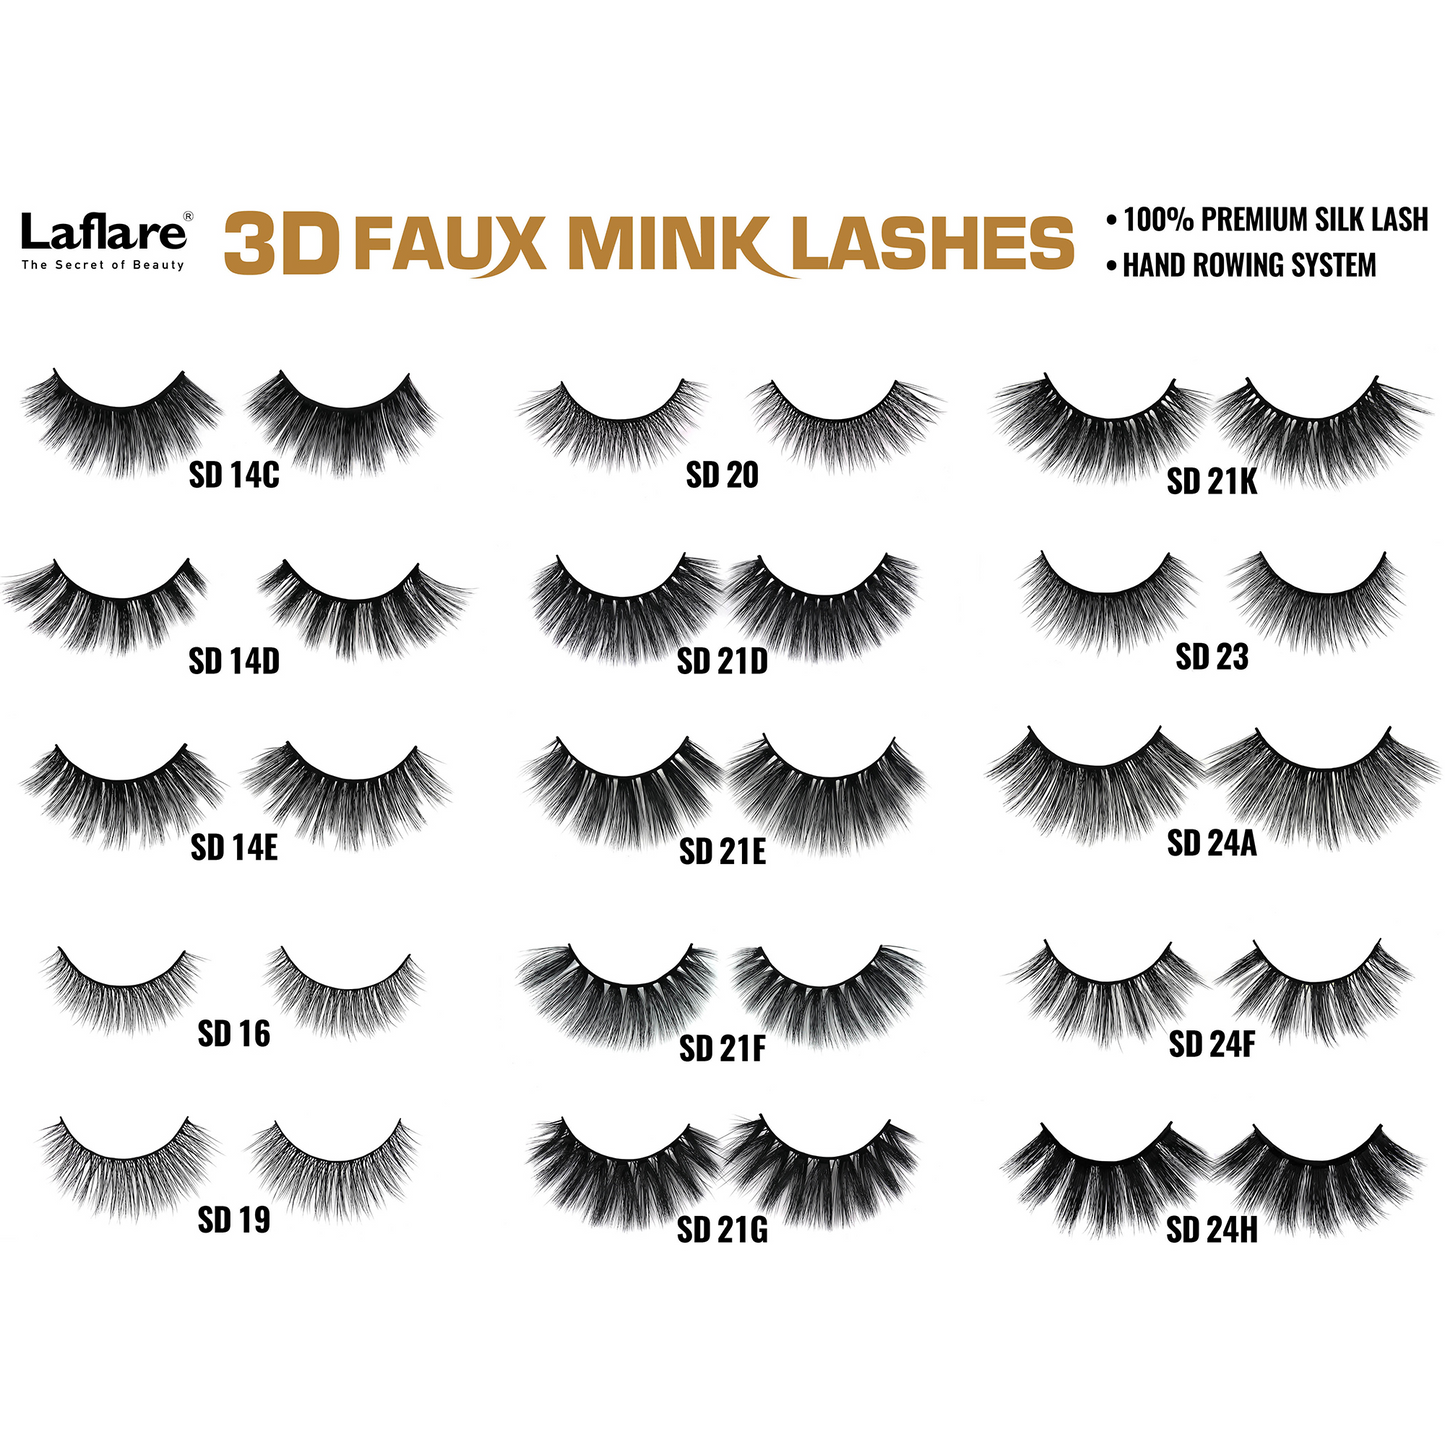 LAFLARE 3D FAUX MINK LASHES - SD21K